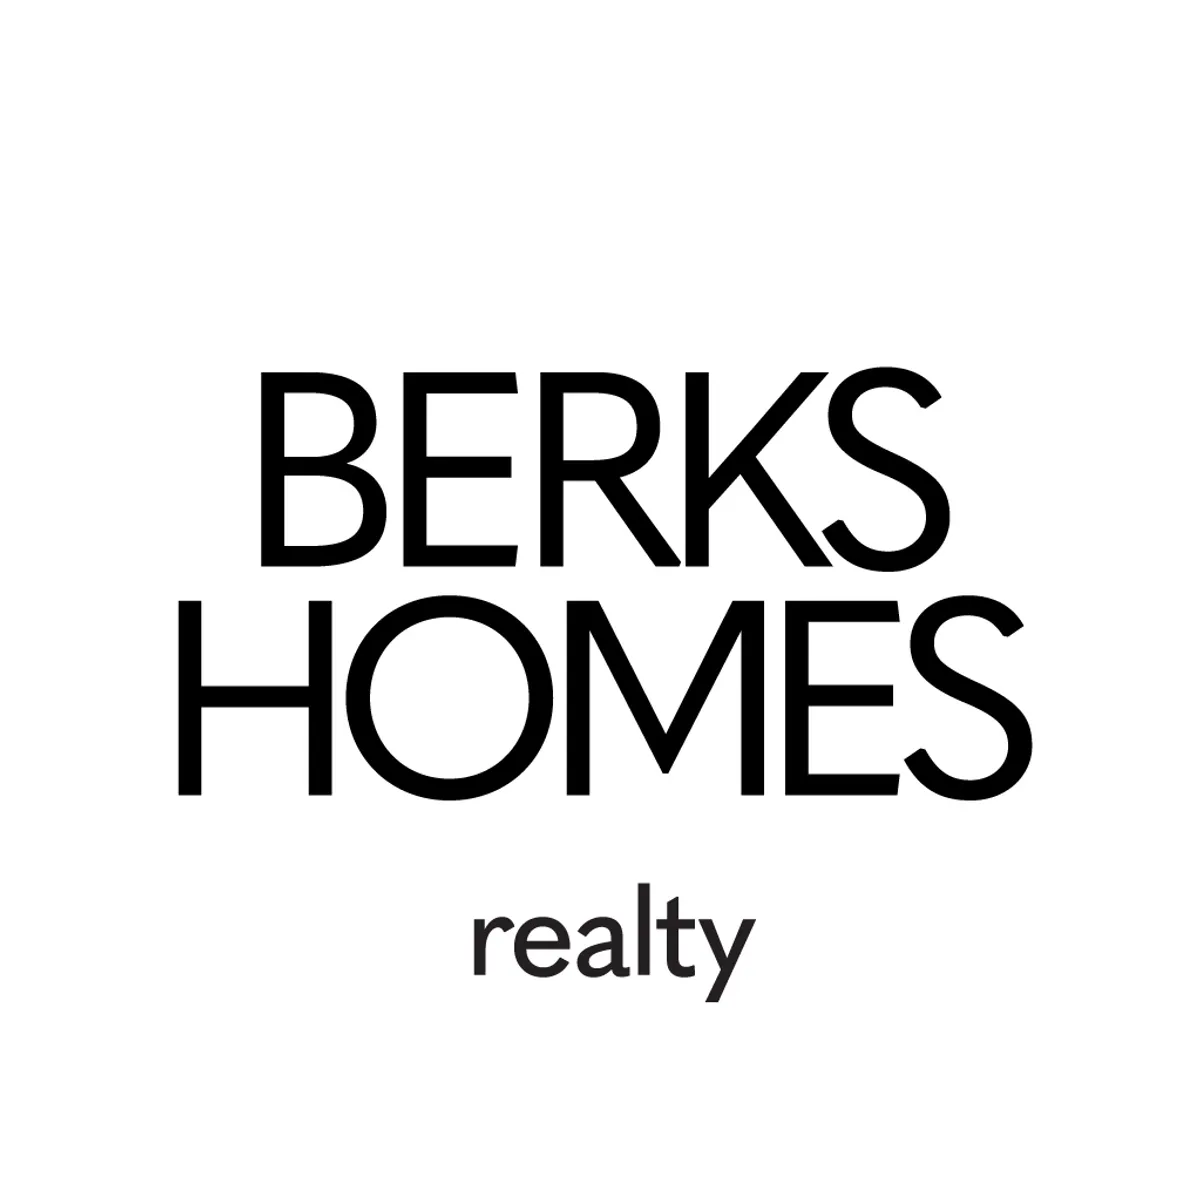 Berks Homes Realty